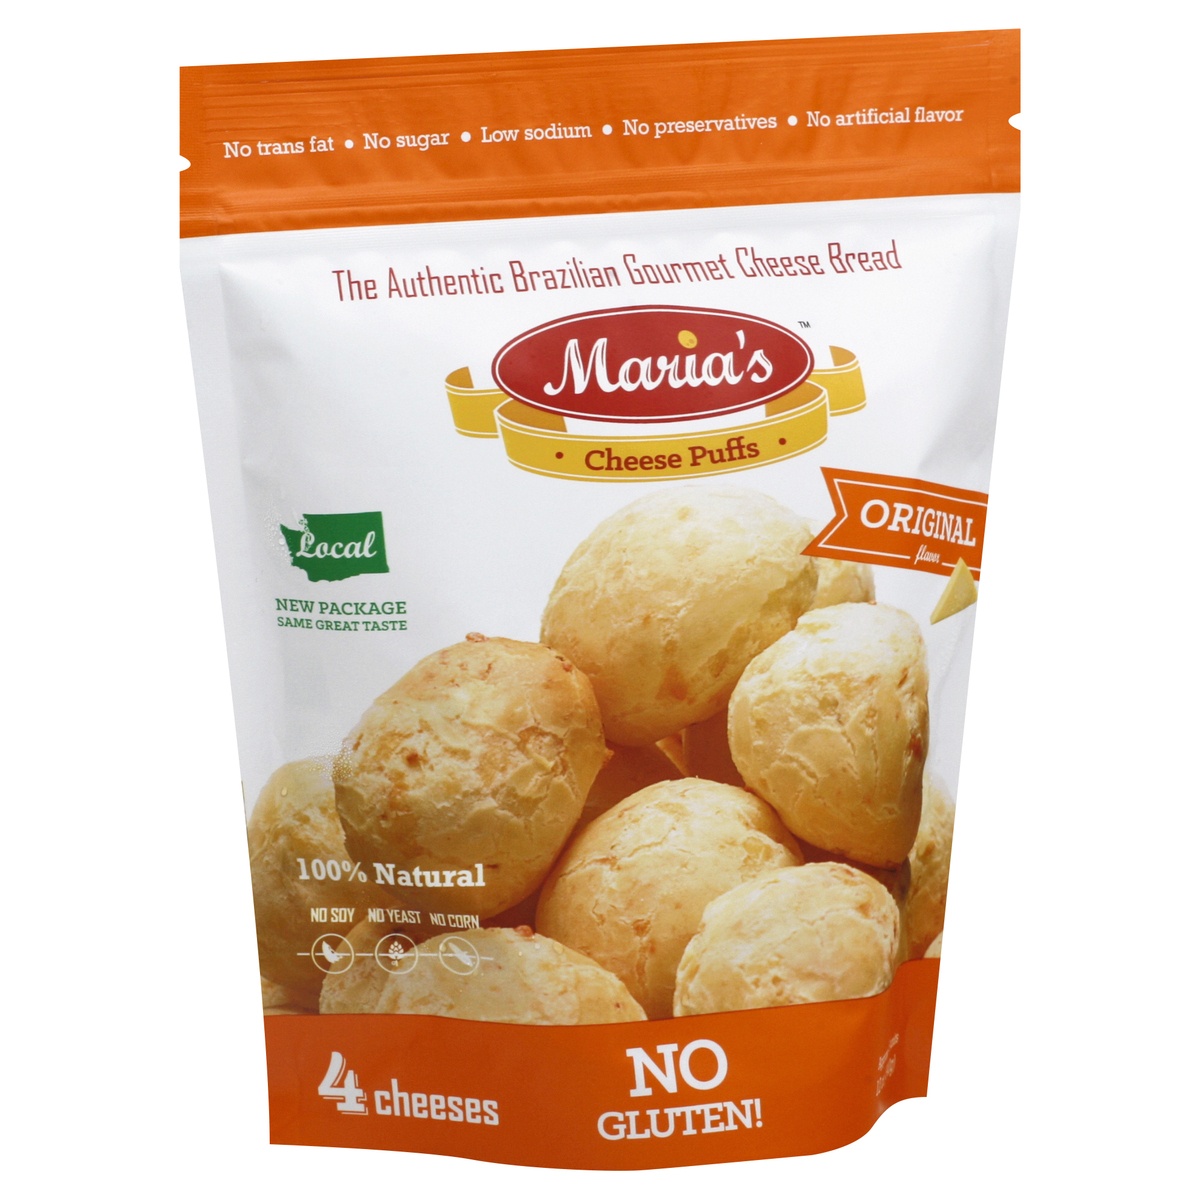 Maria's Cheese Puffs Chs Bread Orig Brzln 12 oz | Shipt